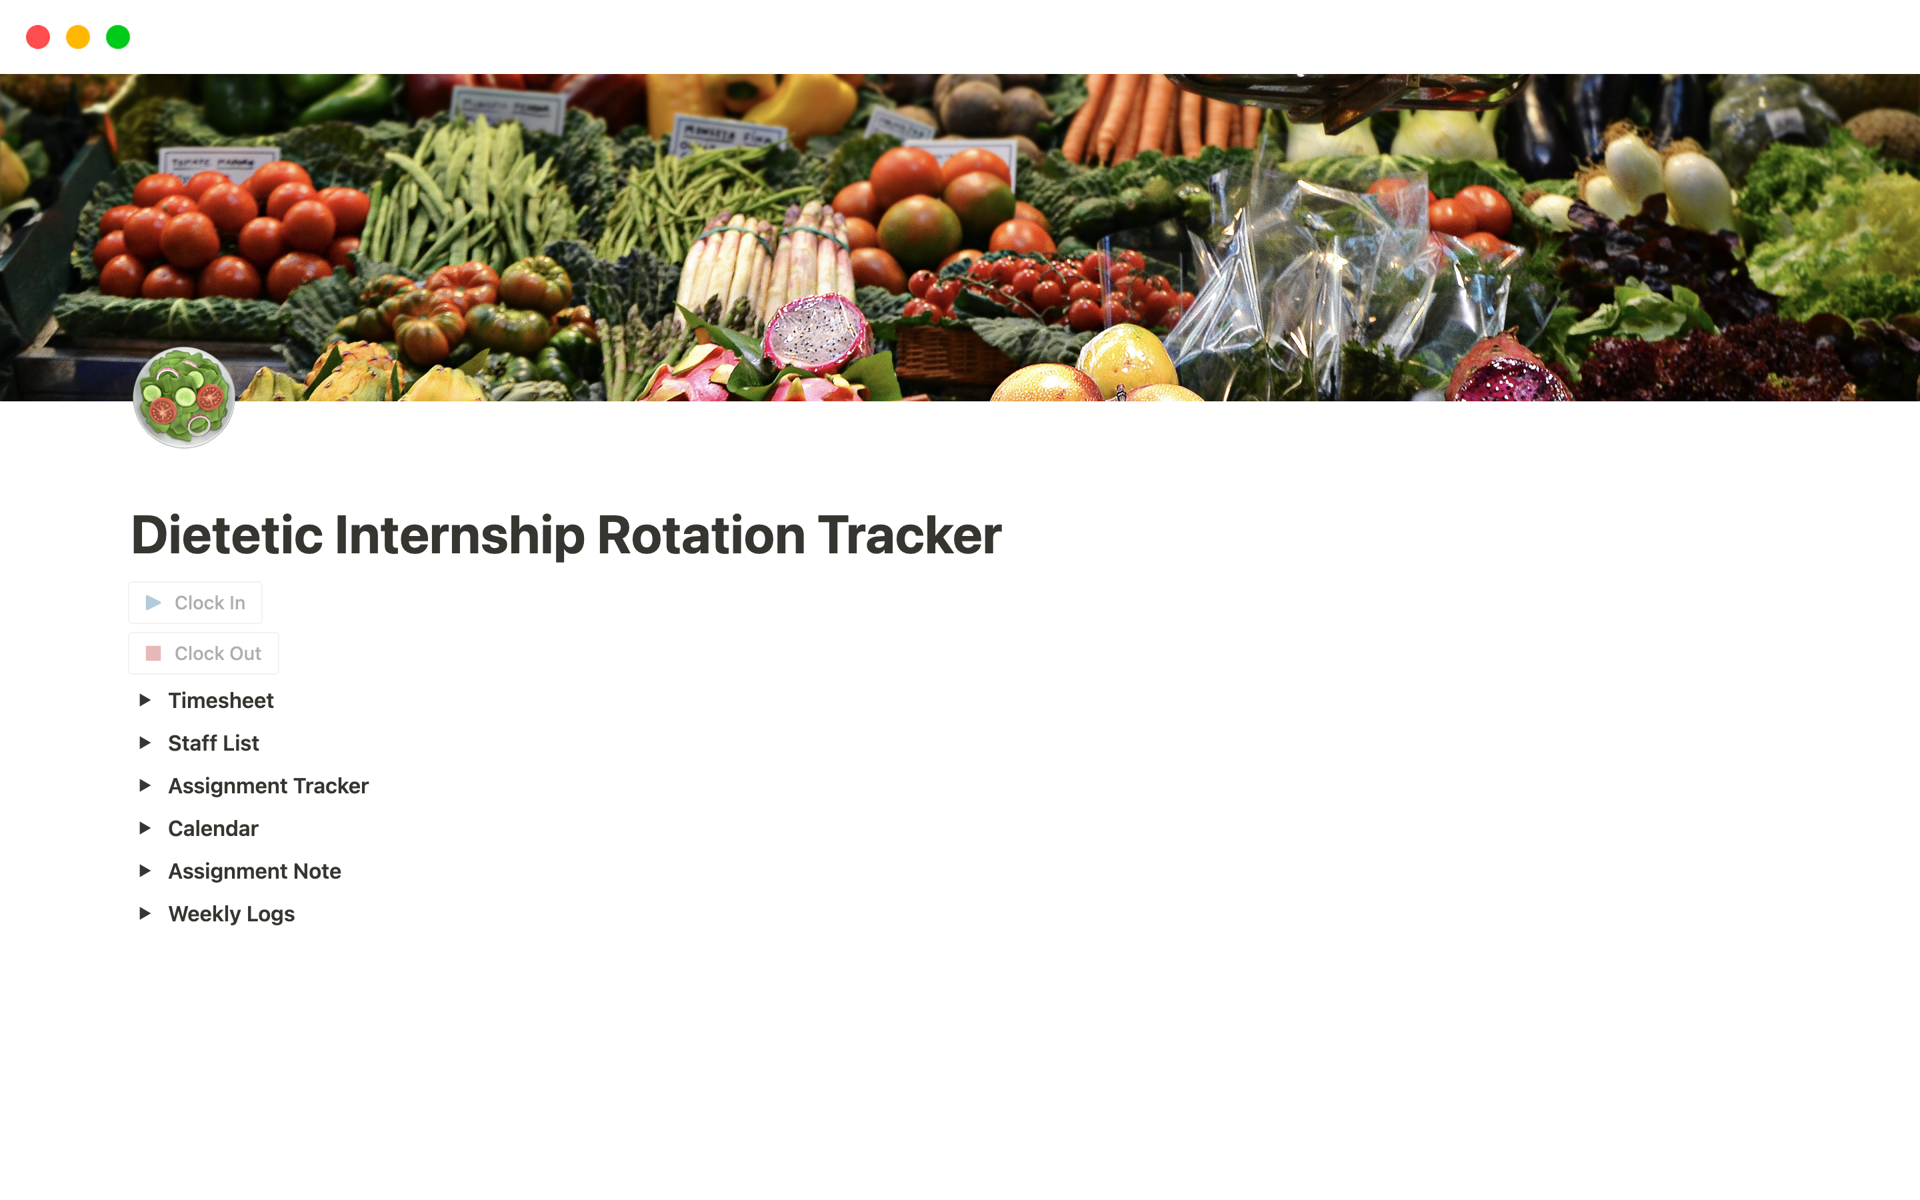 Vista previa de plantilla para Dietetic Internship Rotation Tracker